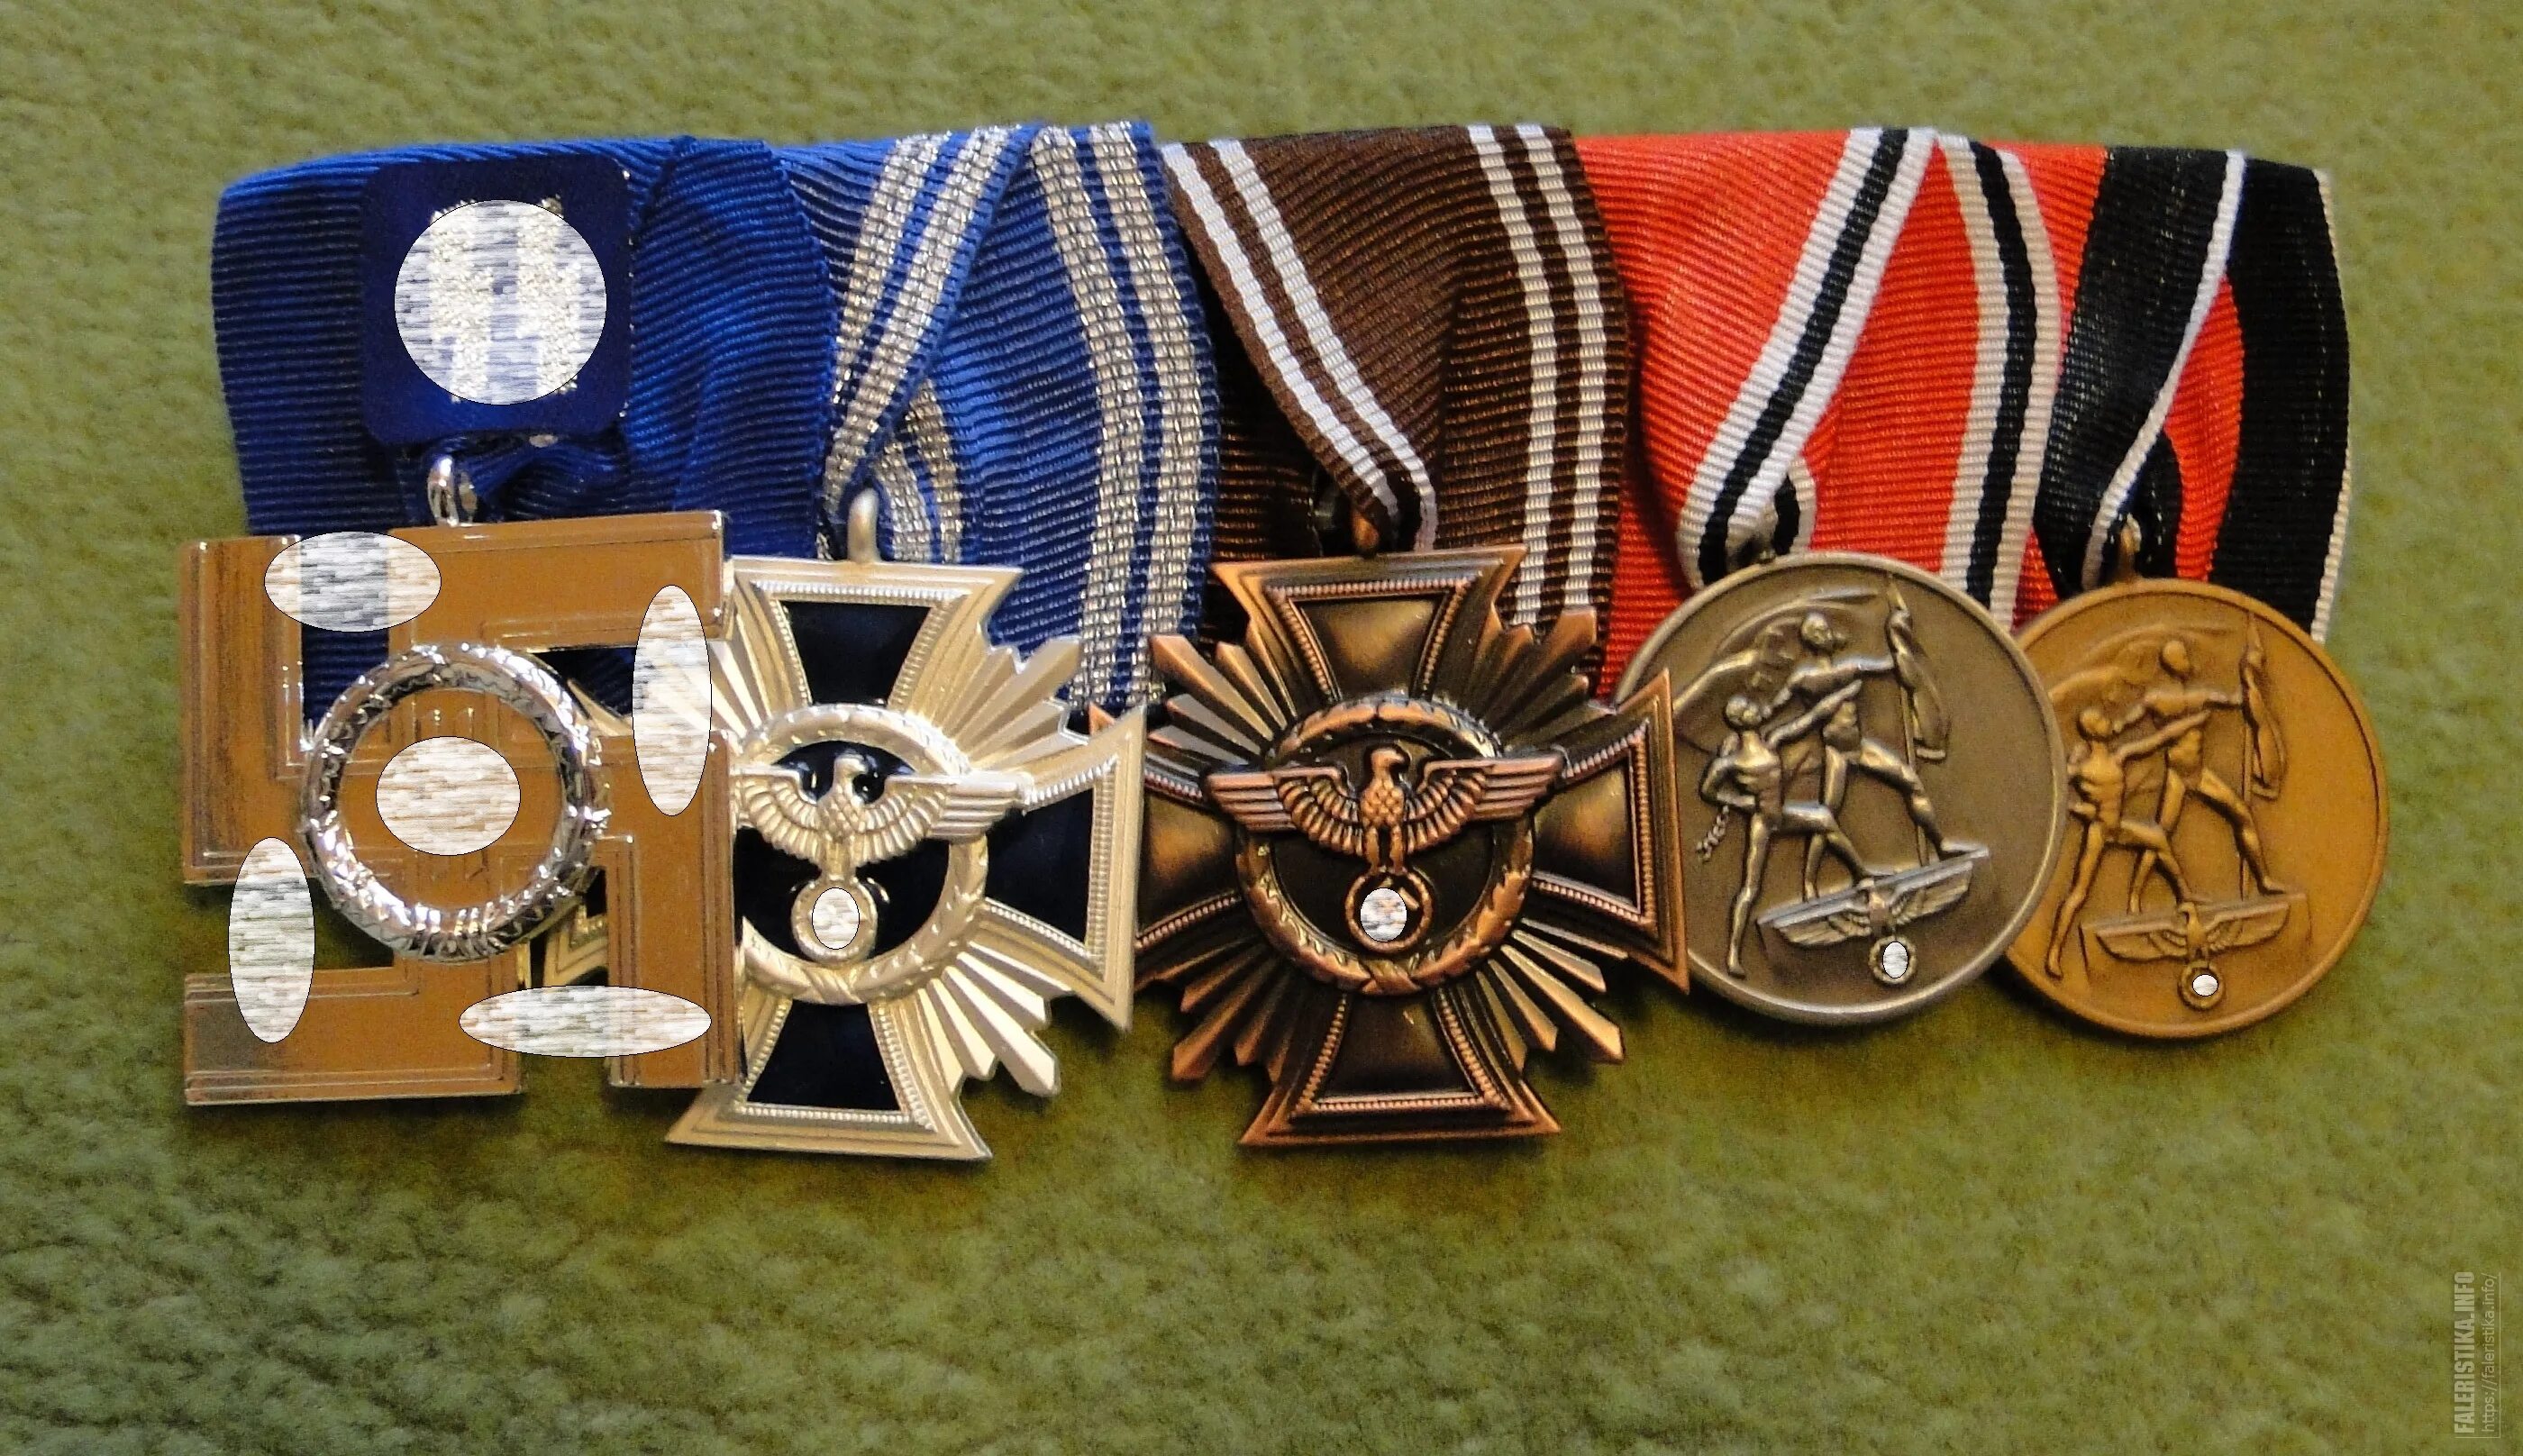 Ордена 3 рейха. Медали СС третьего рейха. Ордена и медали Германии и третьего рейха. Немецкая наградная колодка 3 Рейх. Фашистские медали